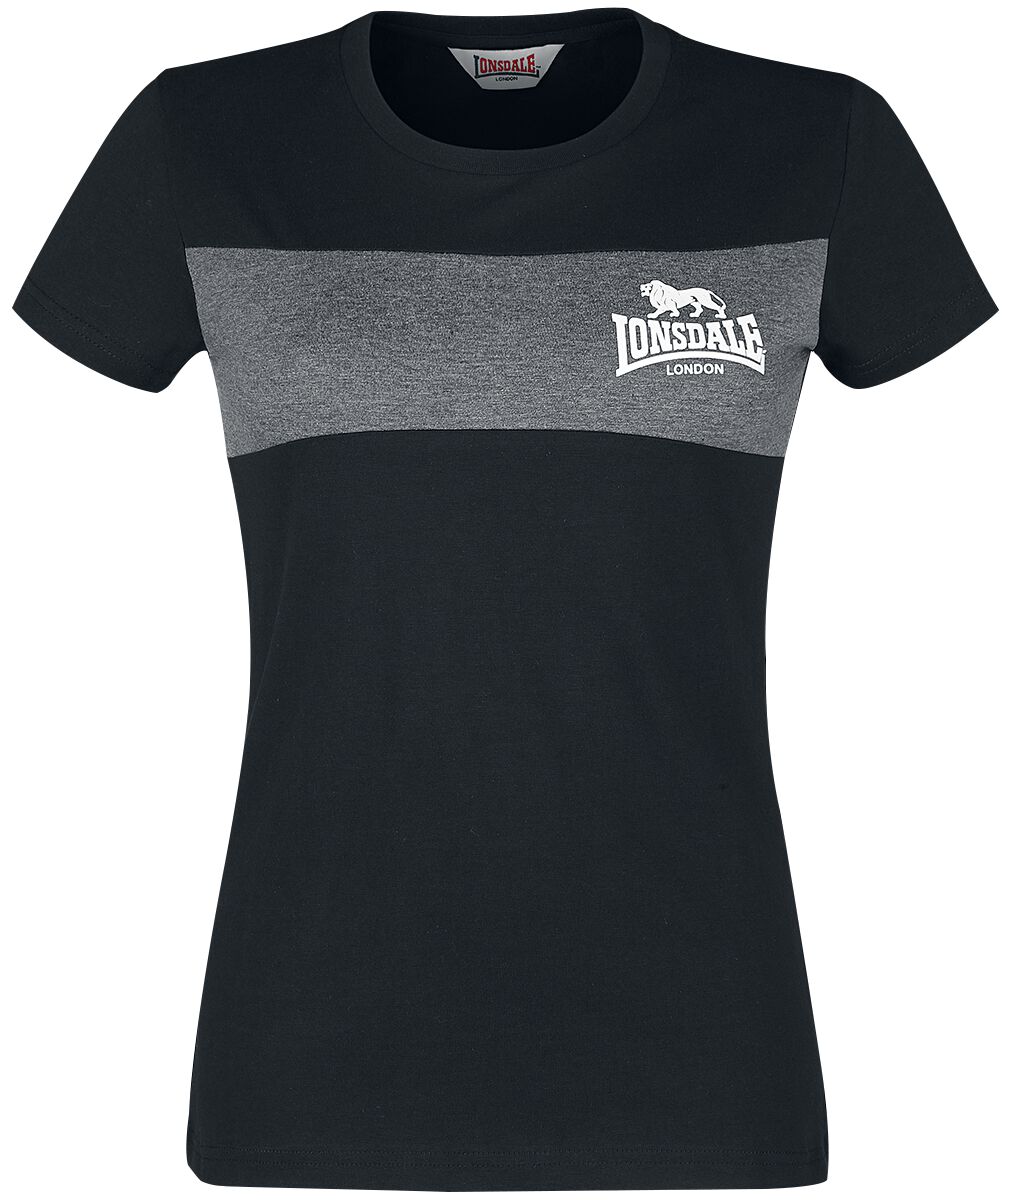 T-Shirt Manches courtes de Lonsdale London - Dawsmere - XS à 3XL - pour Femme - noir